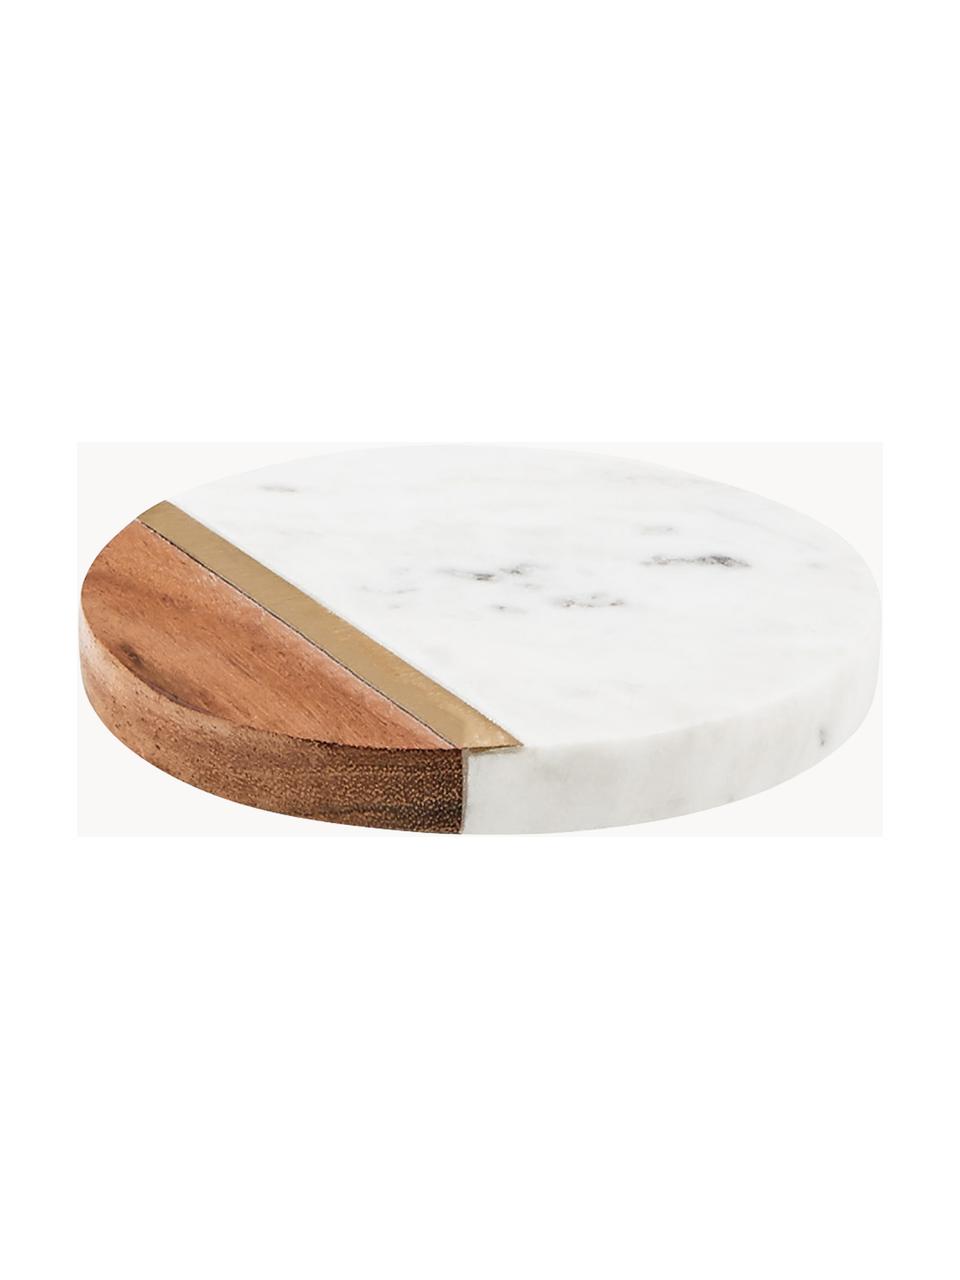 Sottobicchiere in marmo Marble Kitchen 4 pz, Marmo, legno d'acacia, ottone, Bianco marmorizzato, legno chiaro, Ø 10 x Alt. 2 cm